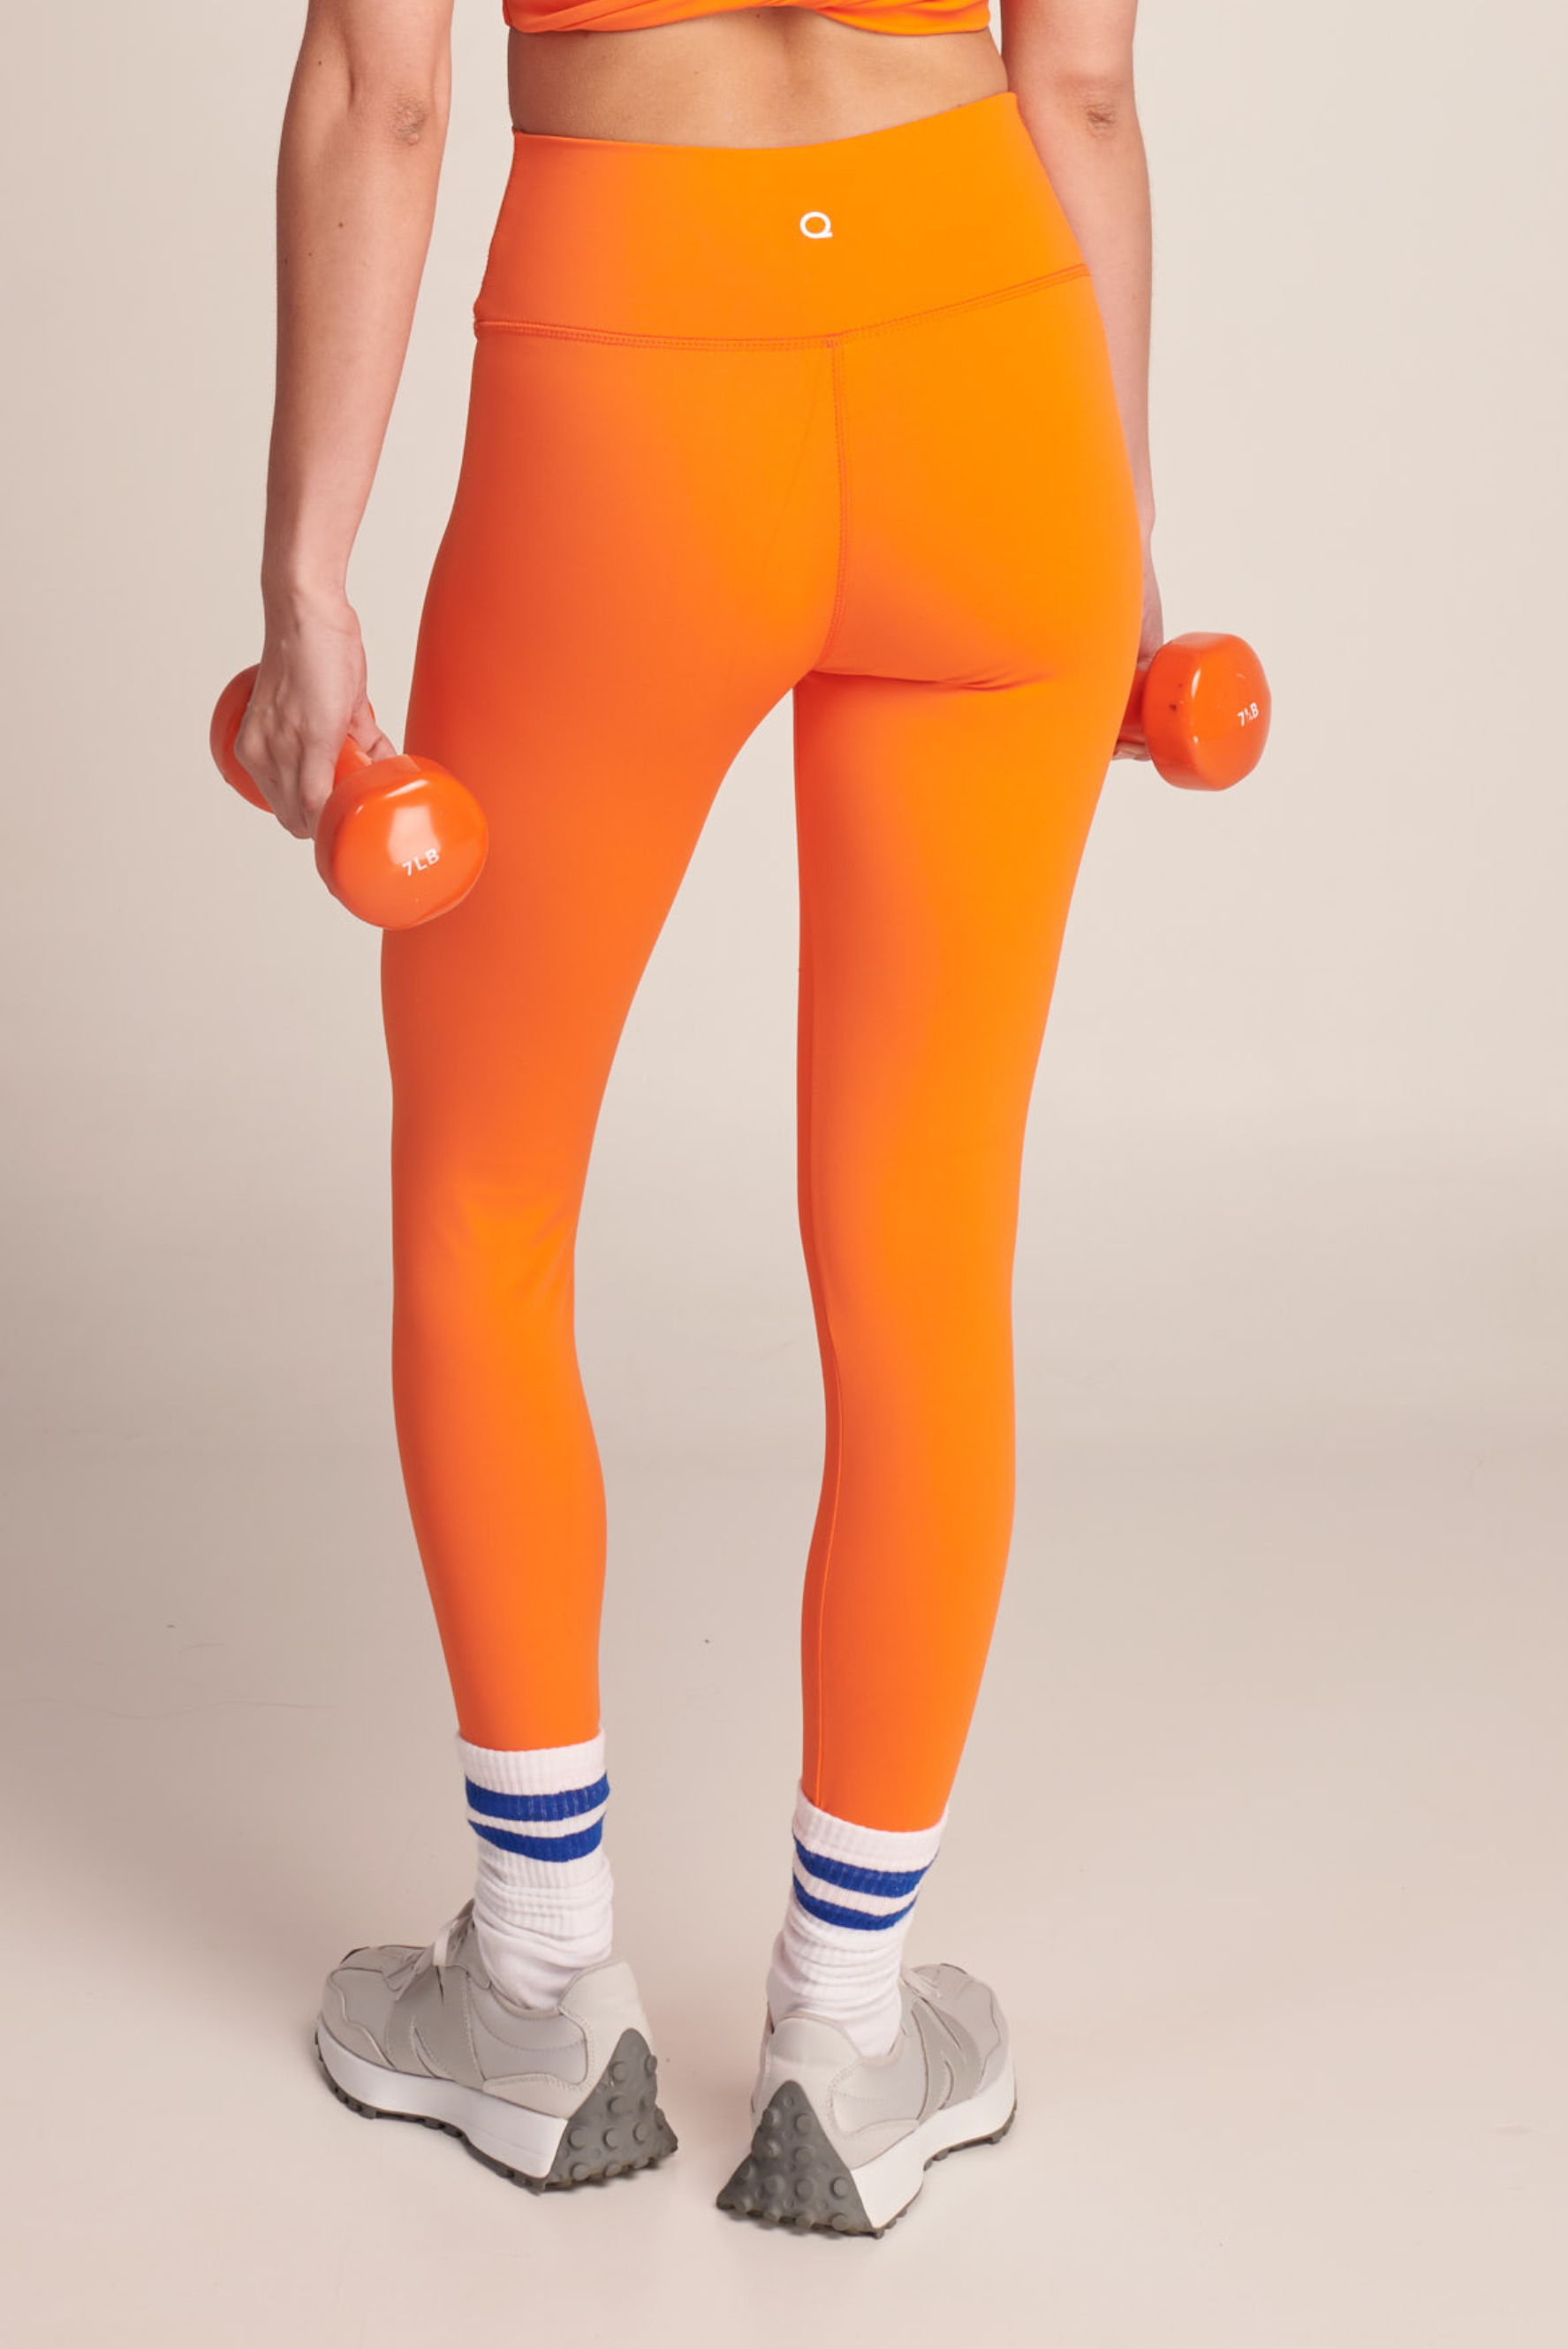 Maqui Ideal Lift Legging - Orange